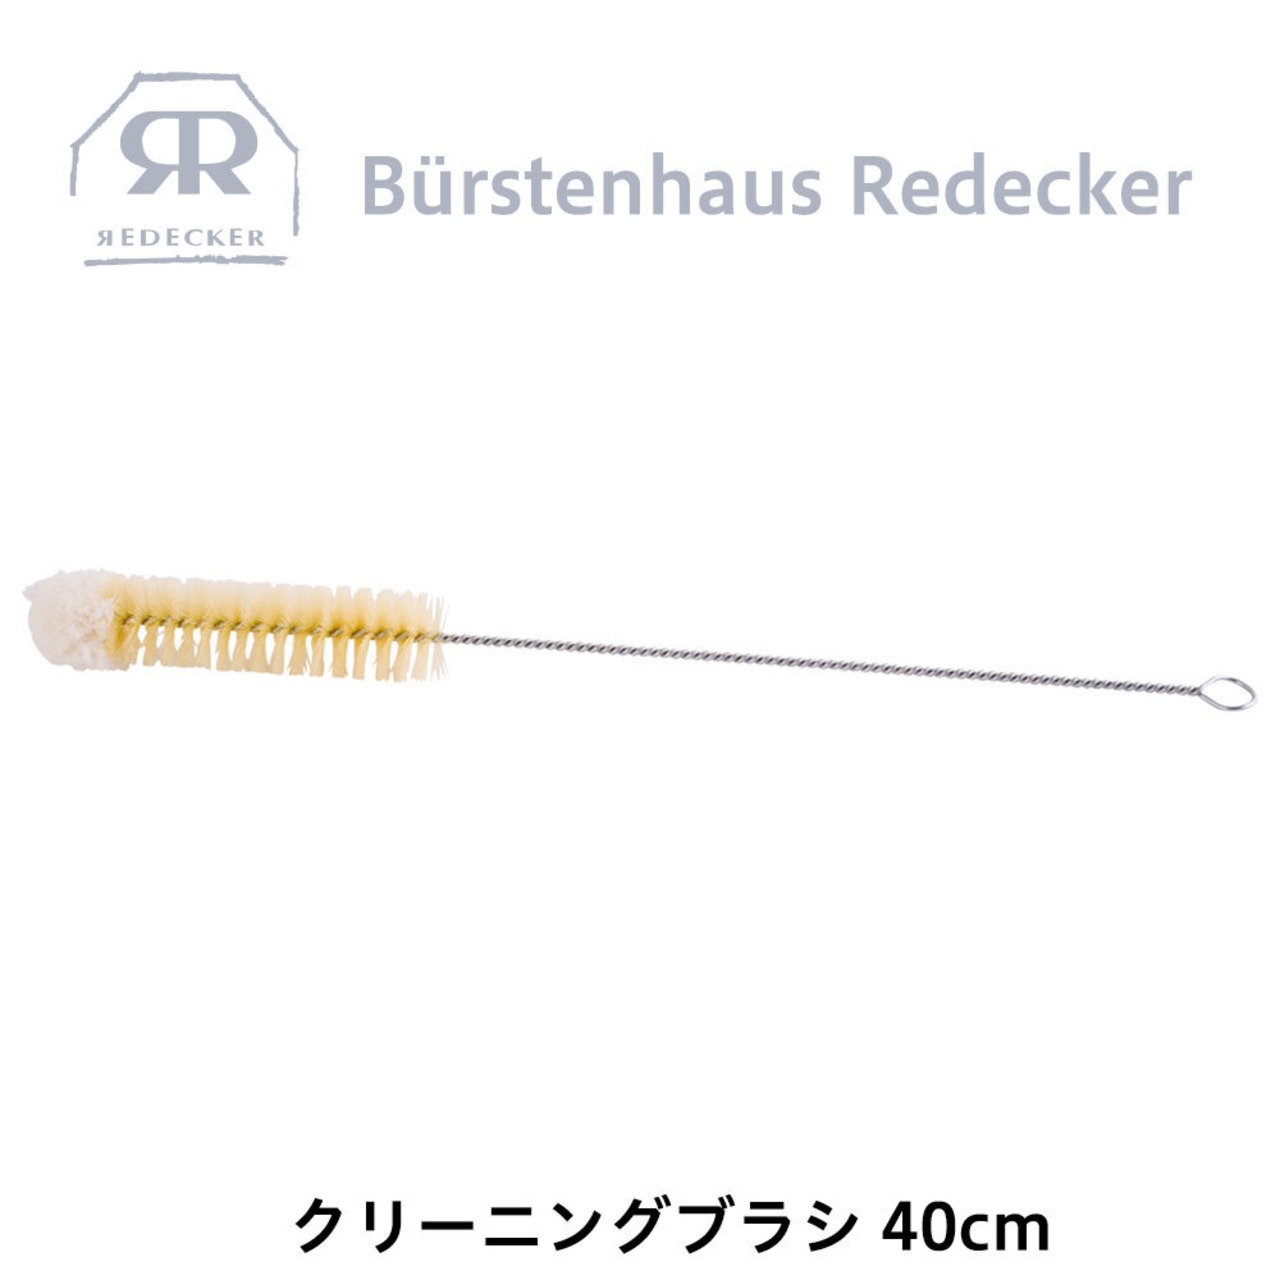 REDECKER(レデッカー) クリーニング ブラシ 40cm